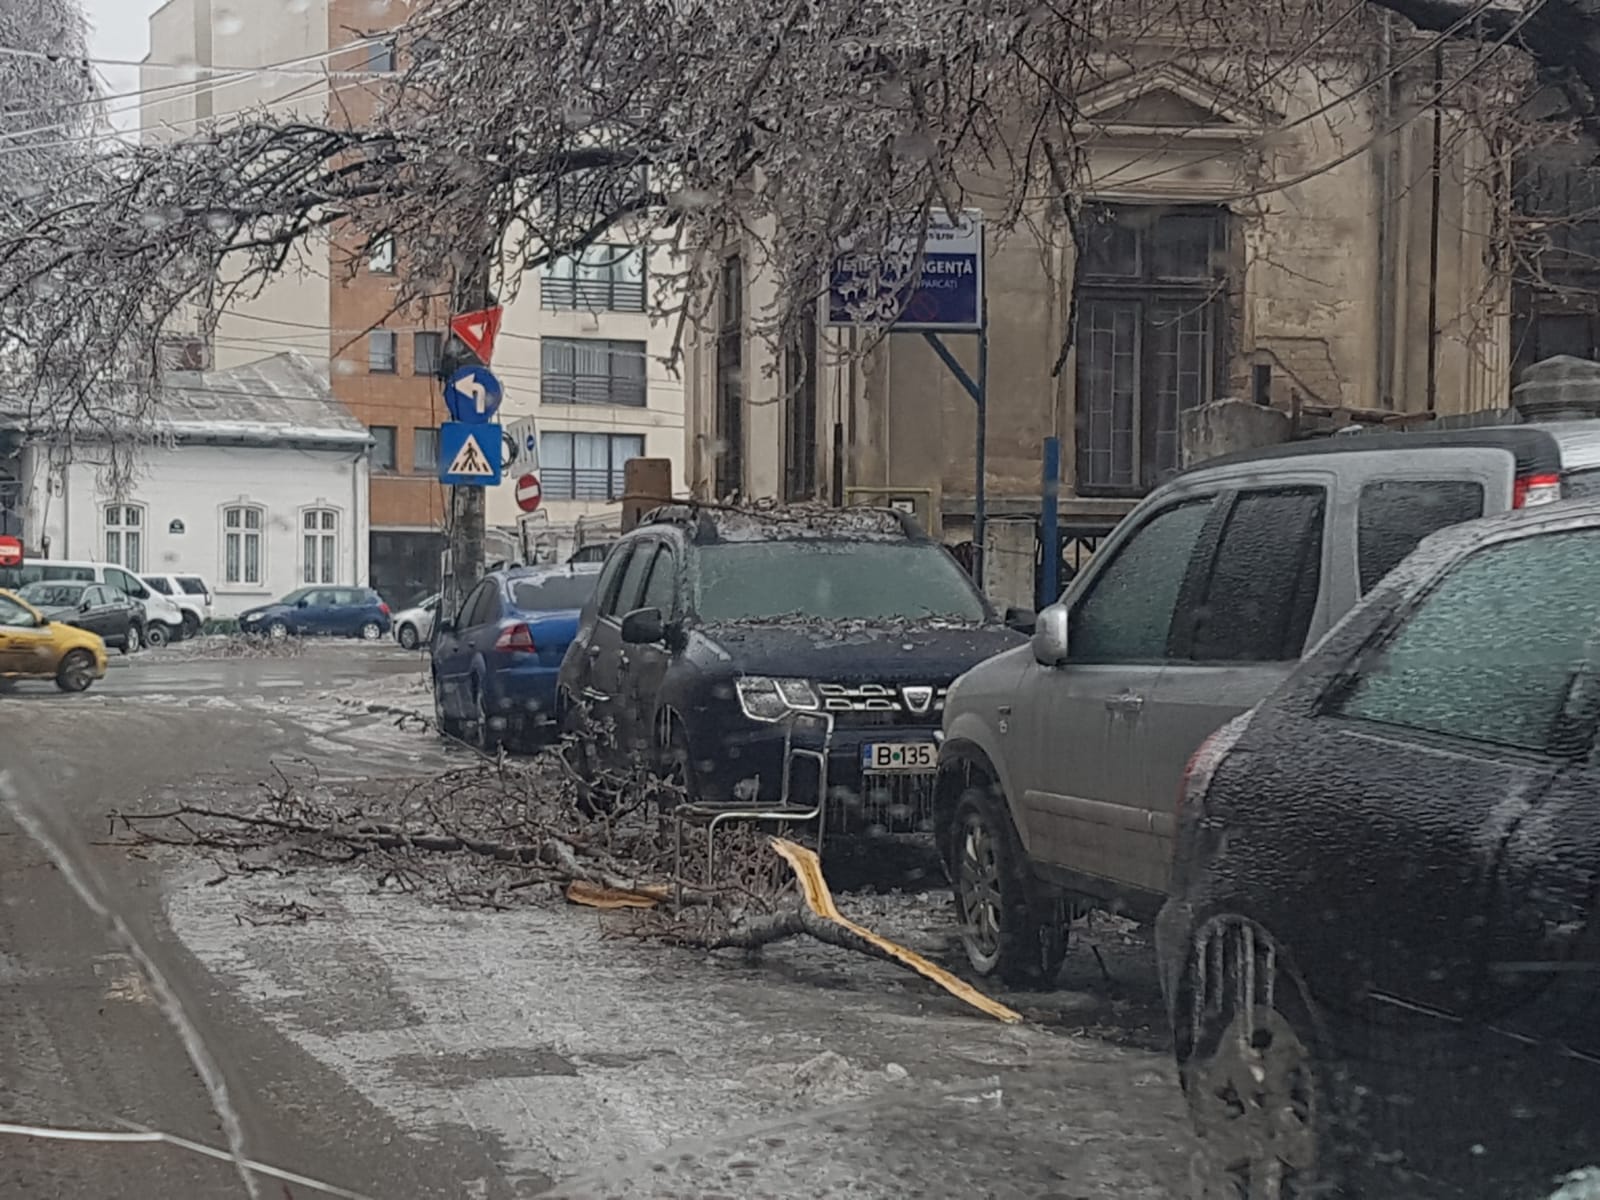 Bucuresti 2019-01-26 / 12.12.27